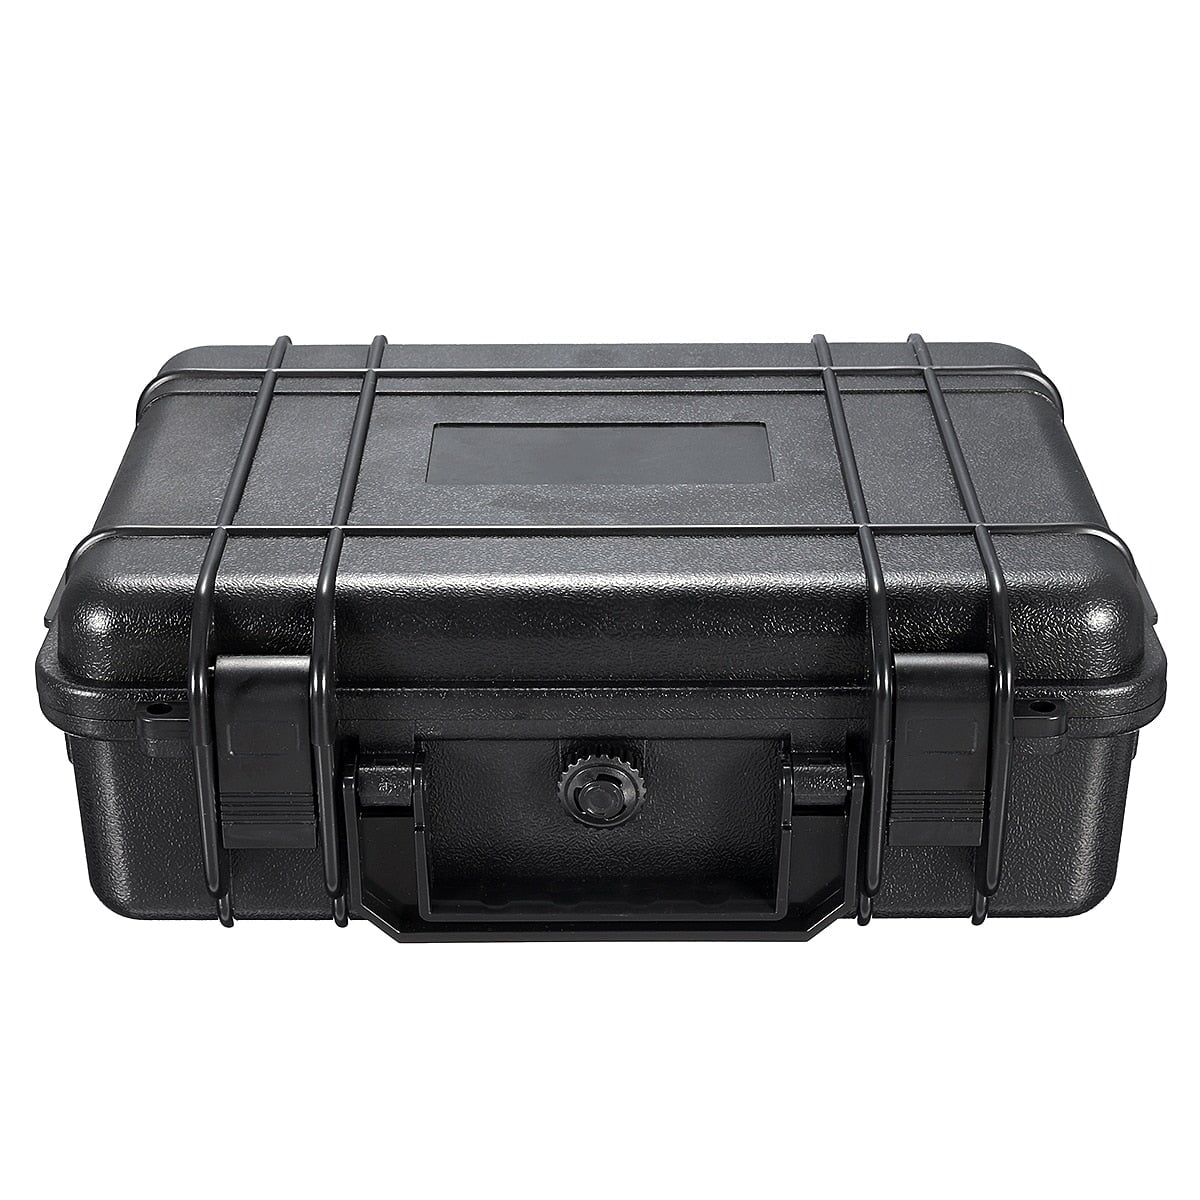 Waterproof Shockproof Hard Protector Case Laptop Bags & Cases BeSmashing 